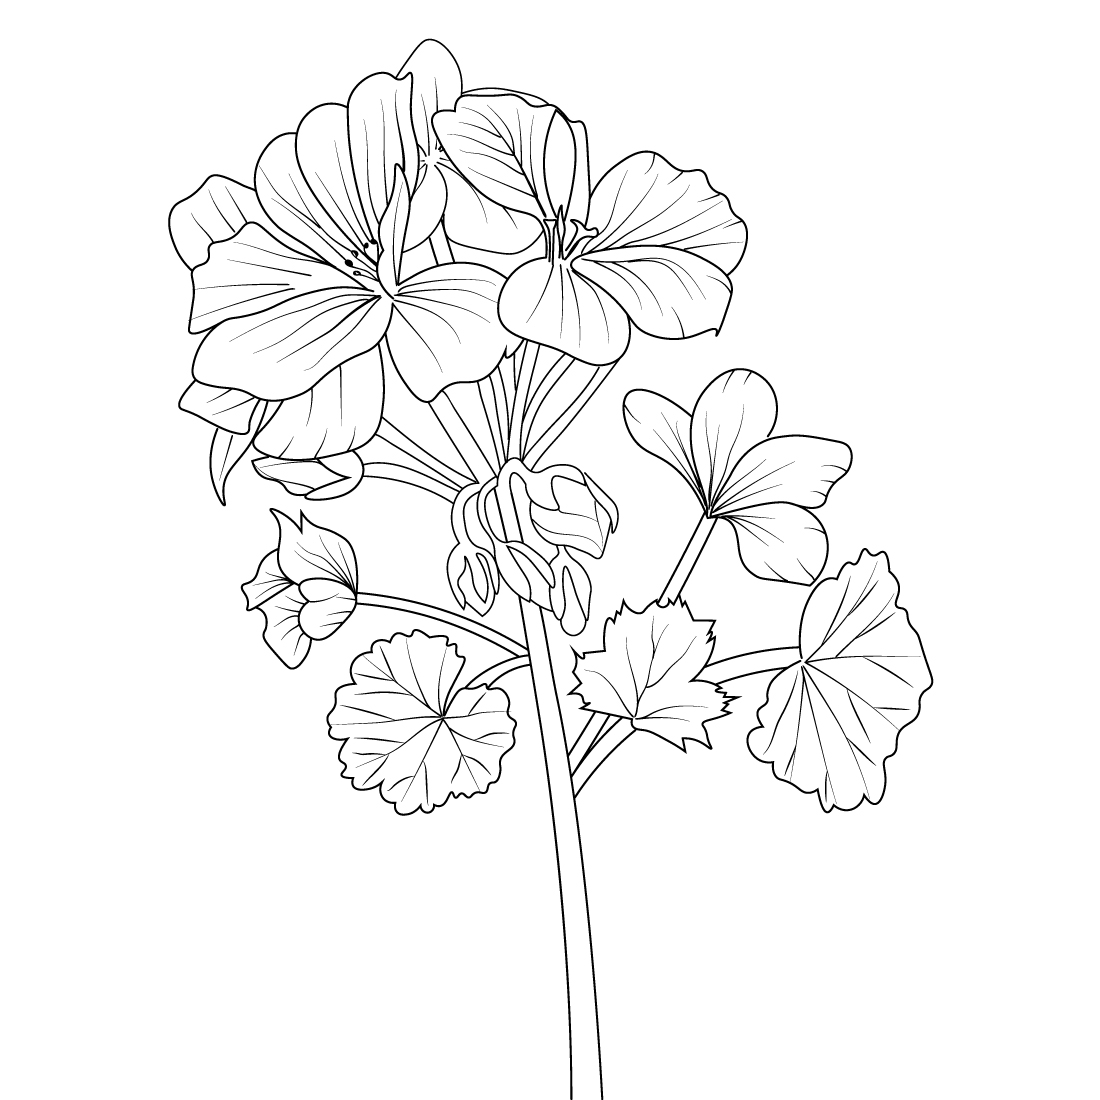 Geranium flower line art, botanical geranium drawing, watercolor botanical geranium drawing, Pelargonium quercifolium, easy geranium drawing, geranium outline drawing preview image.